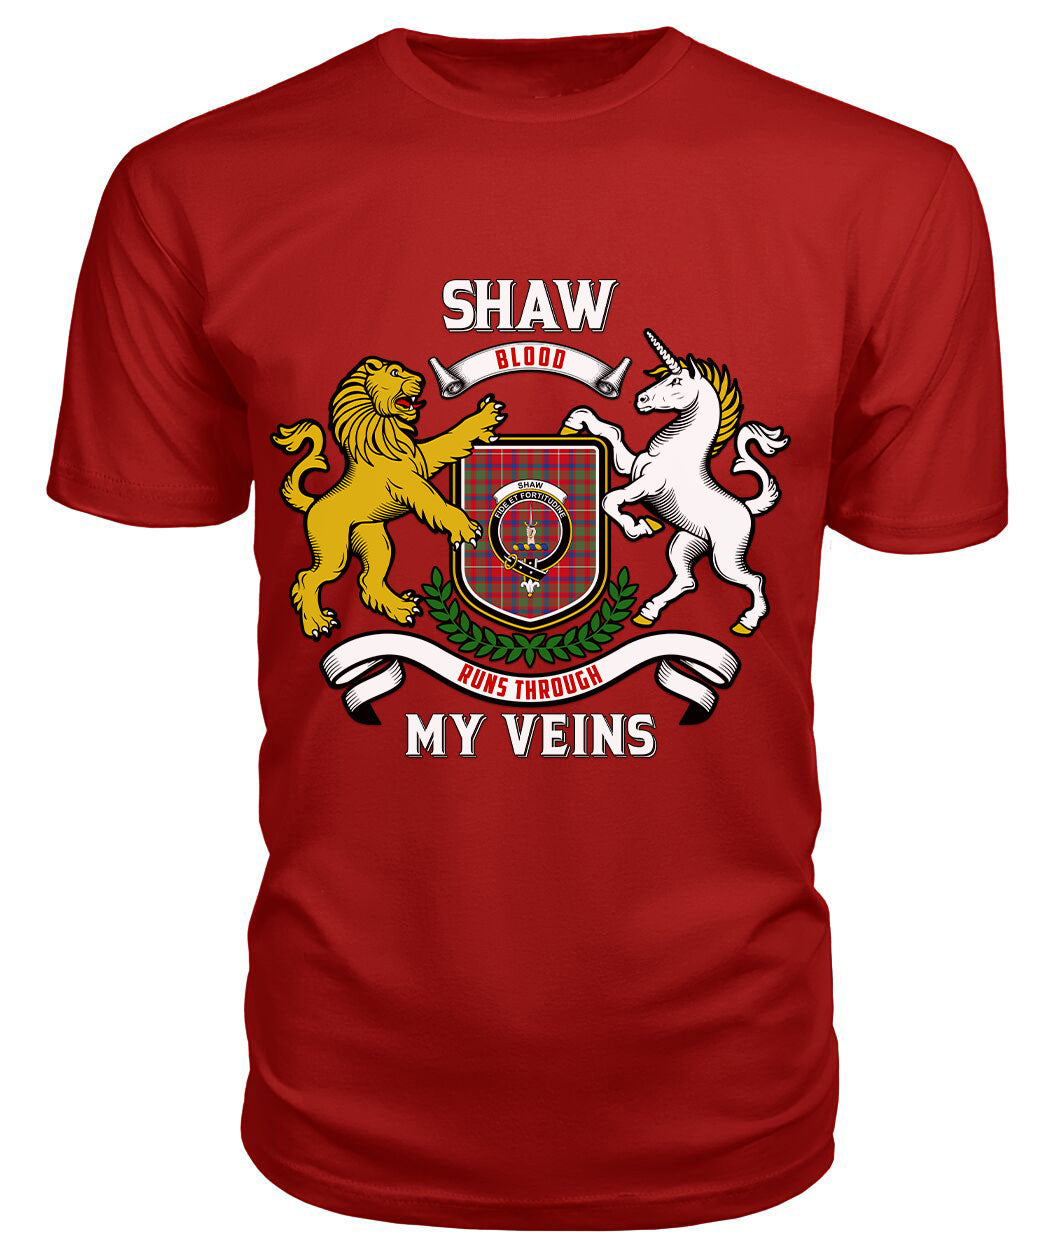 Shaw Red Modern Tartan Crest 2D T-shirt - Blood Runs Through My Veins Style